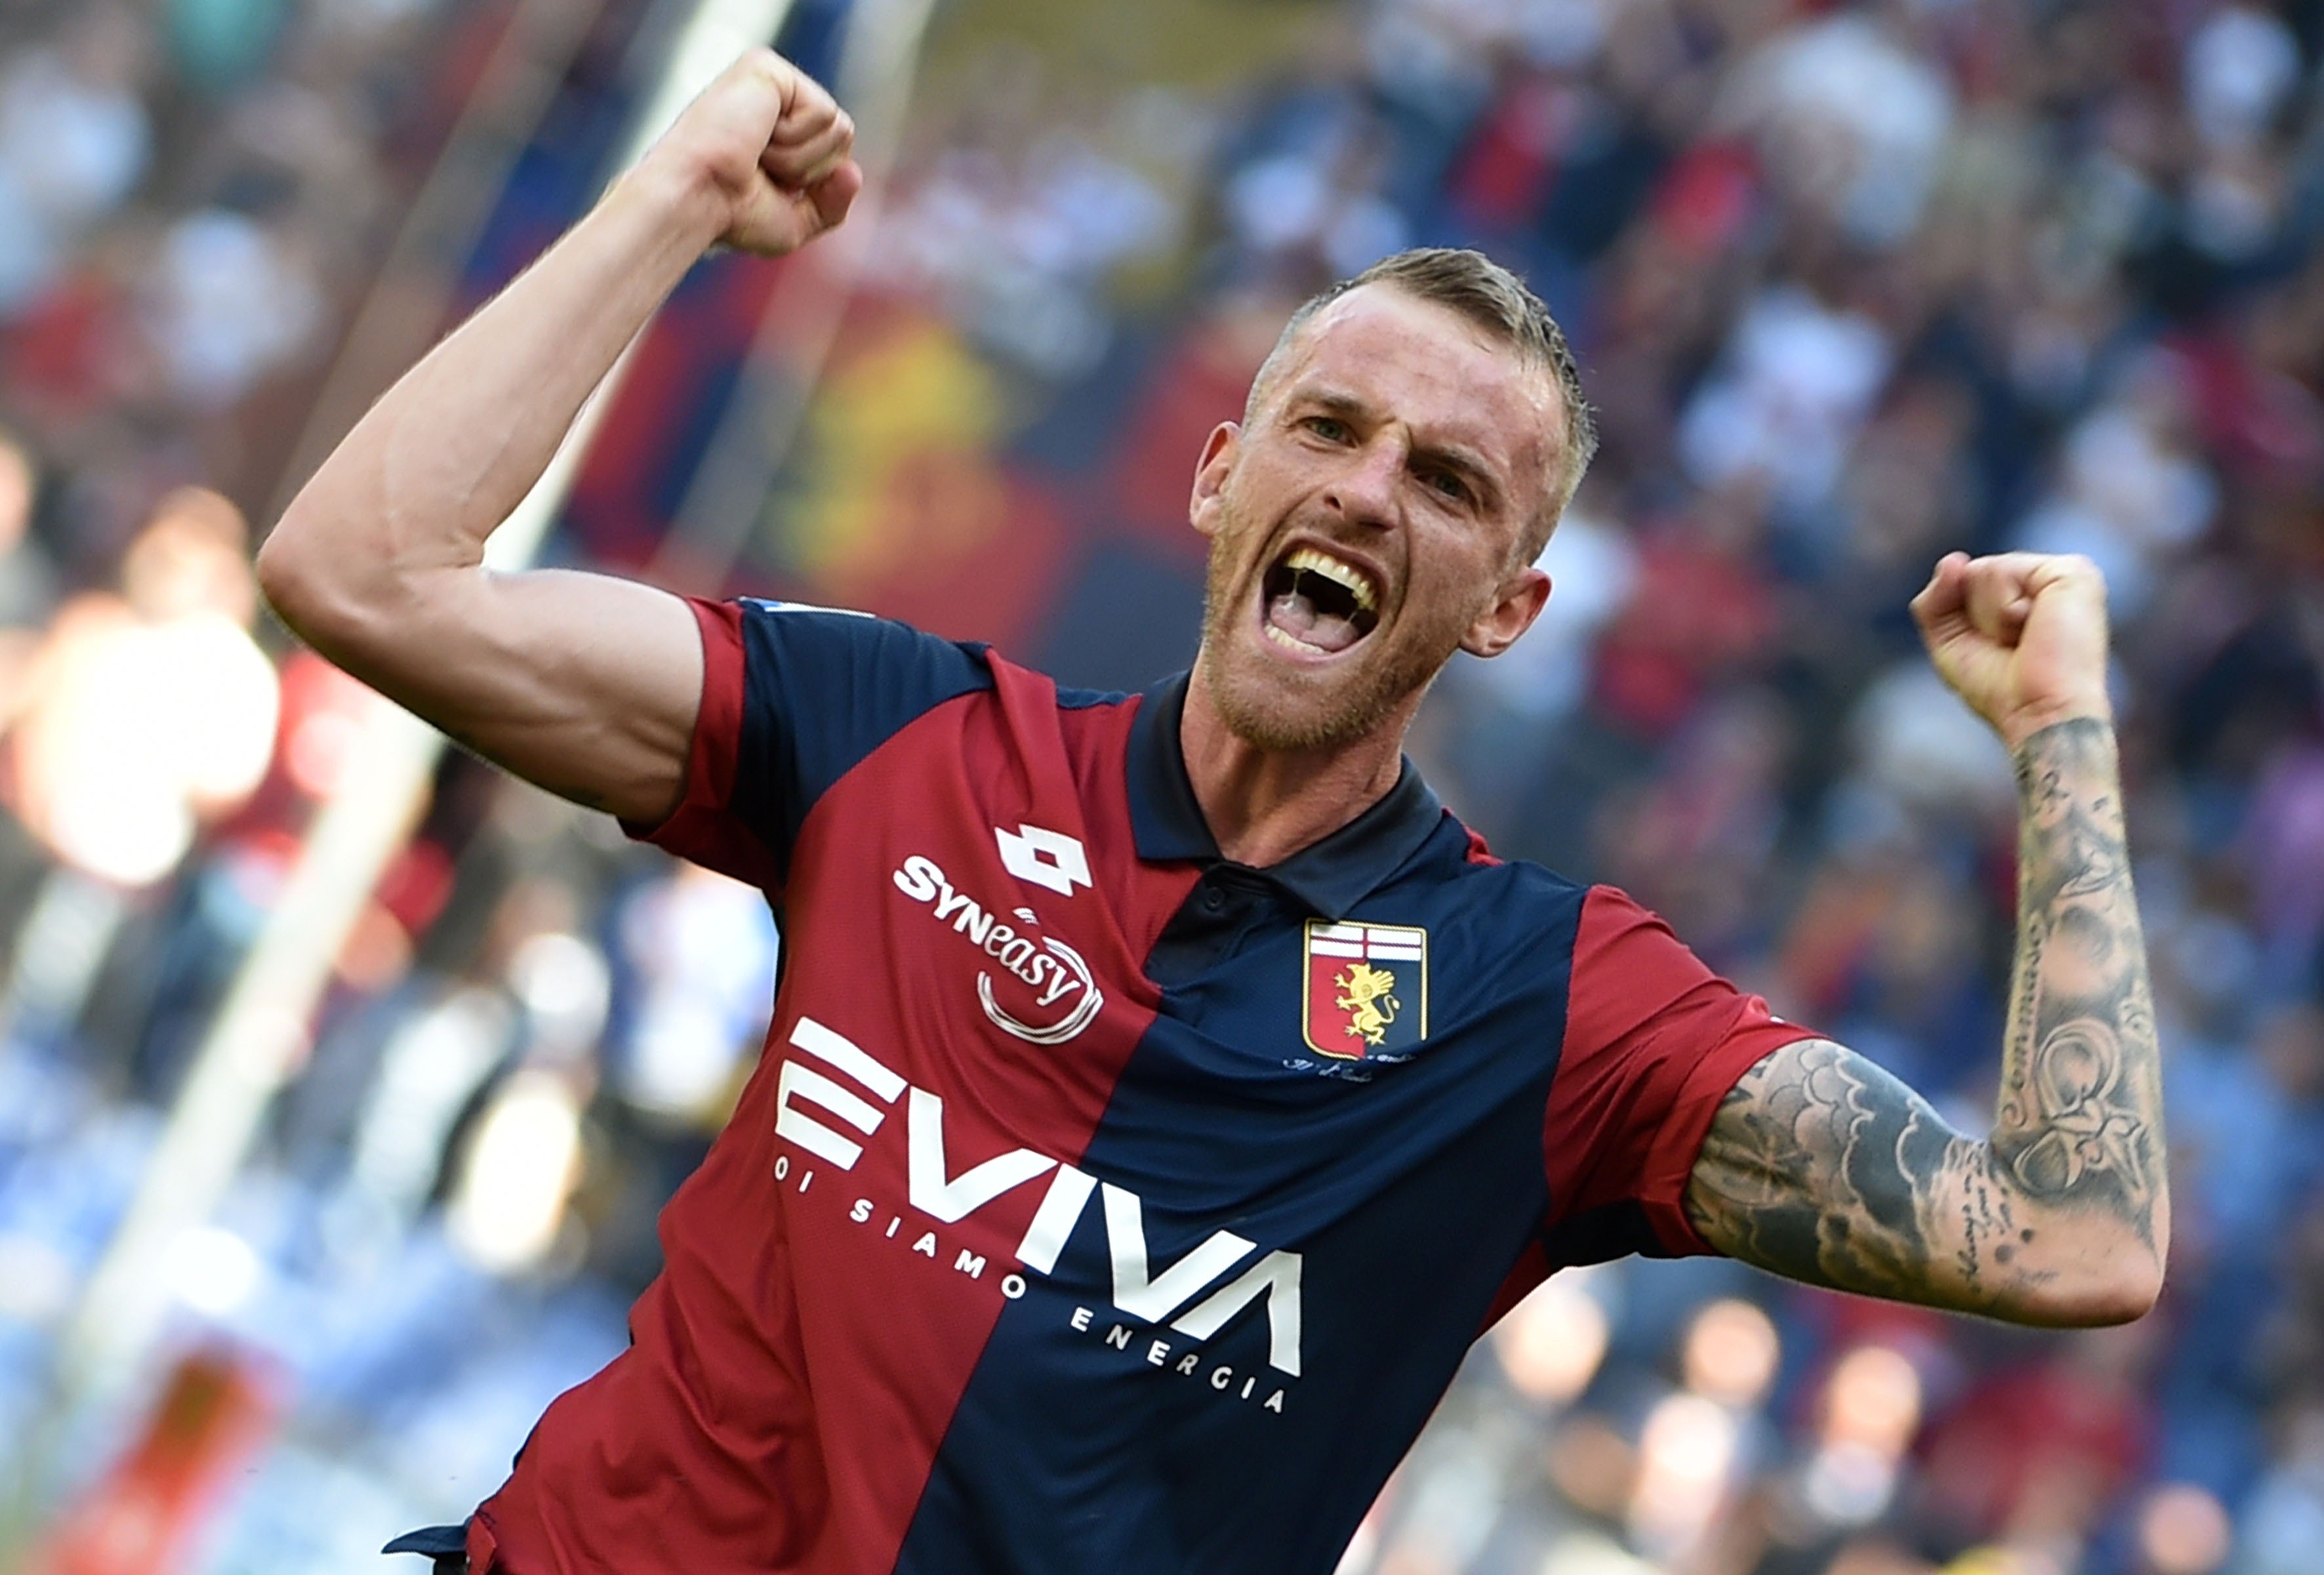 Luca Rigoni esplode di felicità dopo il gol (Foto Paolo Rattini/Getty Images)